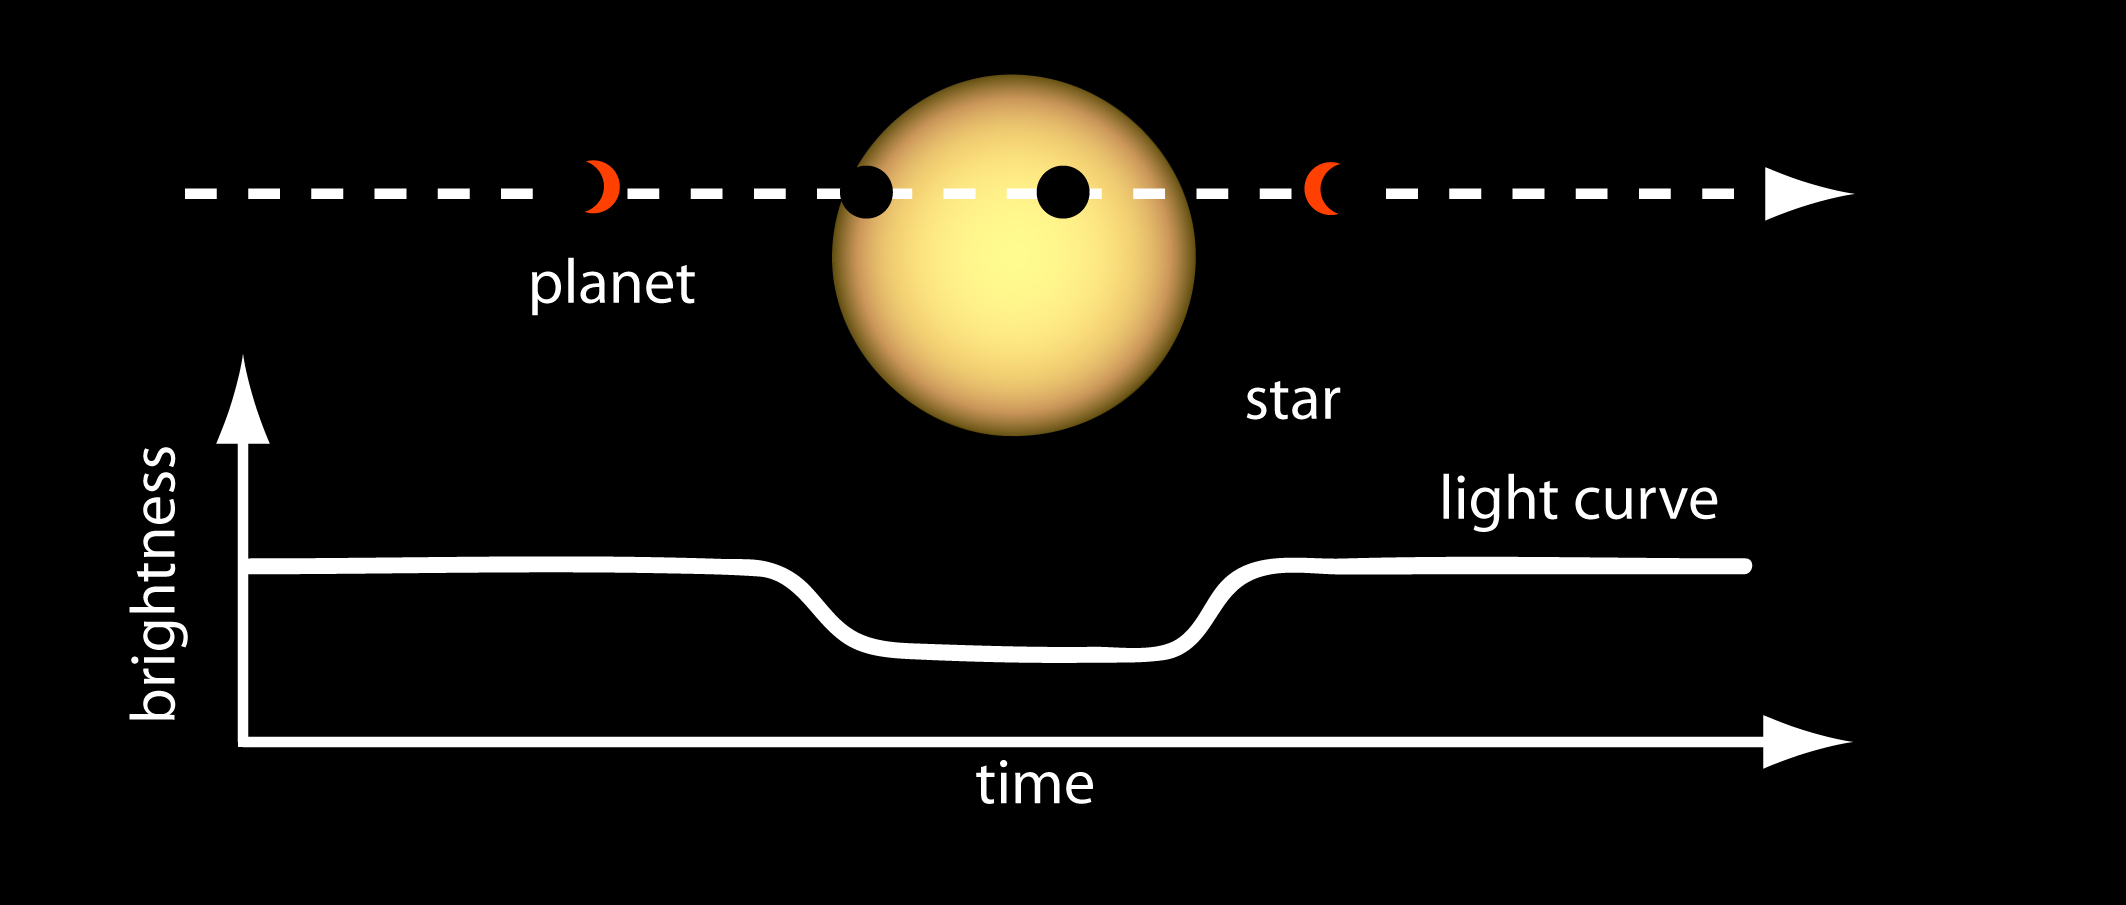 billet tilfældig glas File:Light Curve of a Planet Transiting Its Star.jpg - Wikimedia Commons